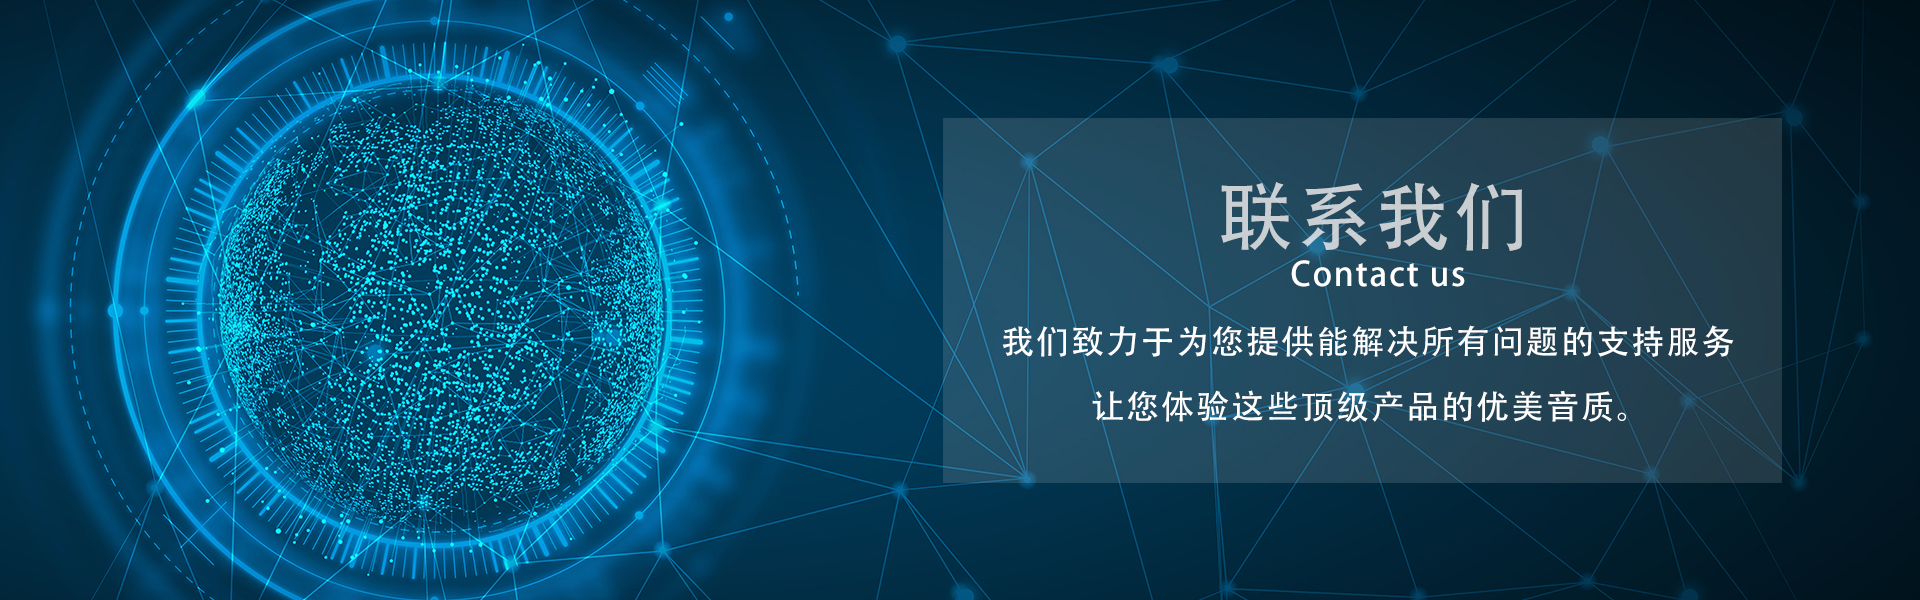 合作共赢_广州市天谱电器有限公司万利达品牌网站